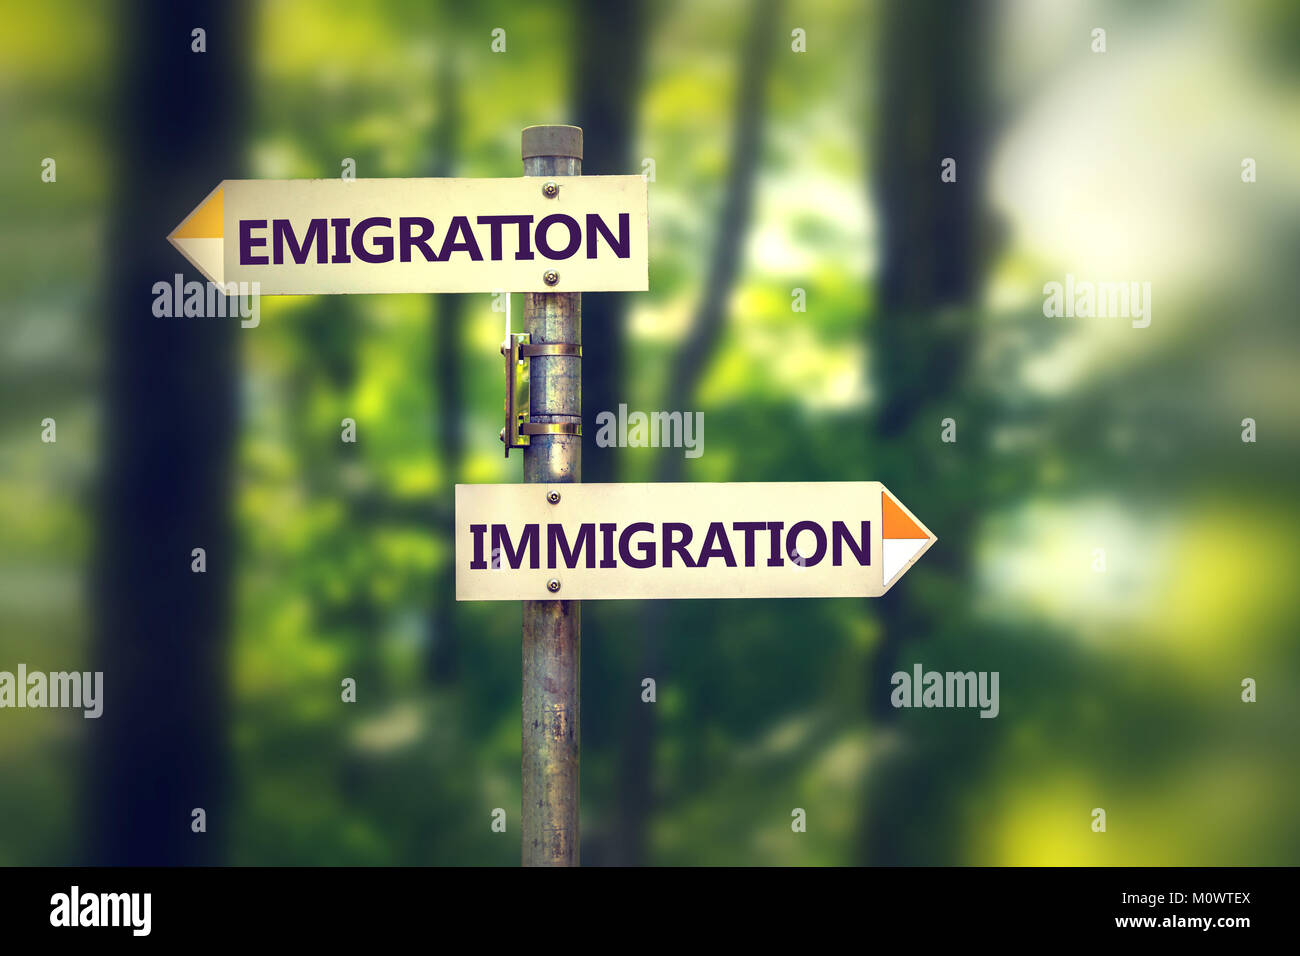 Pol mit Guiding Tabletten mit Wahl zwischen Emigration und Migration. Stockfoto